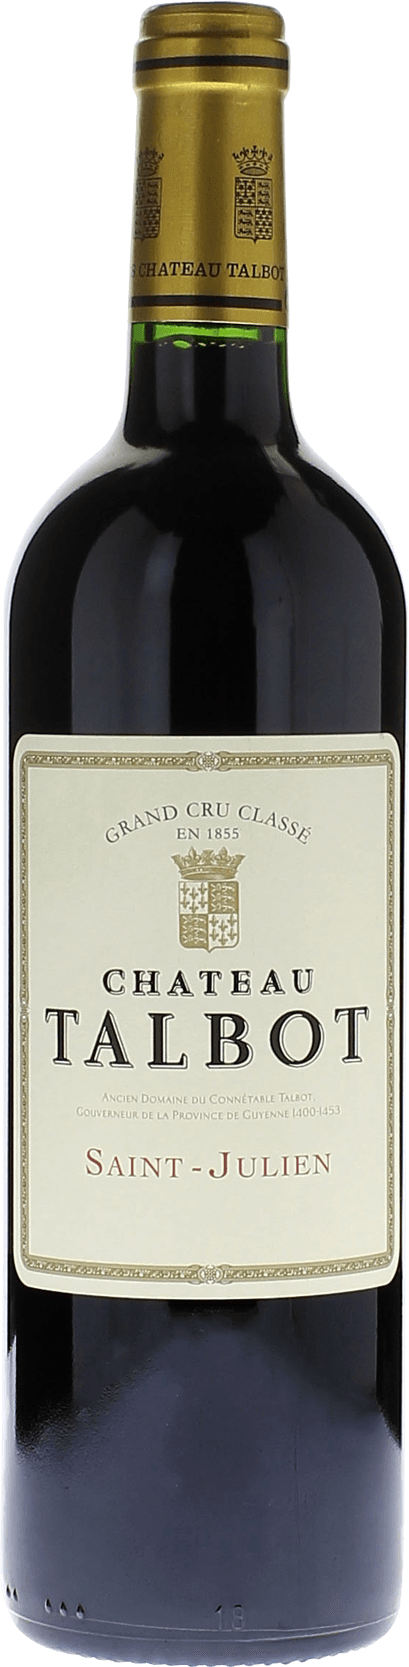 Talbot 1998 4me Grand cru class Saint-Julien, Bordeaux rouge